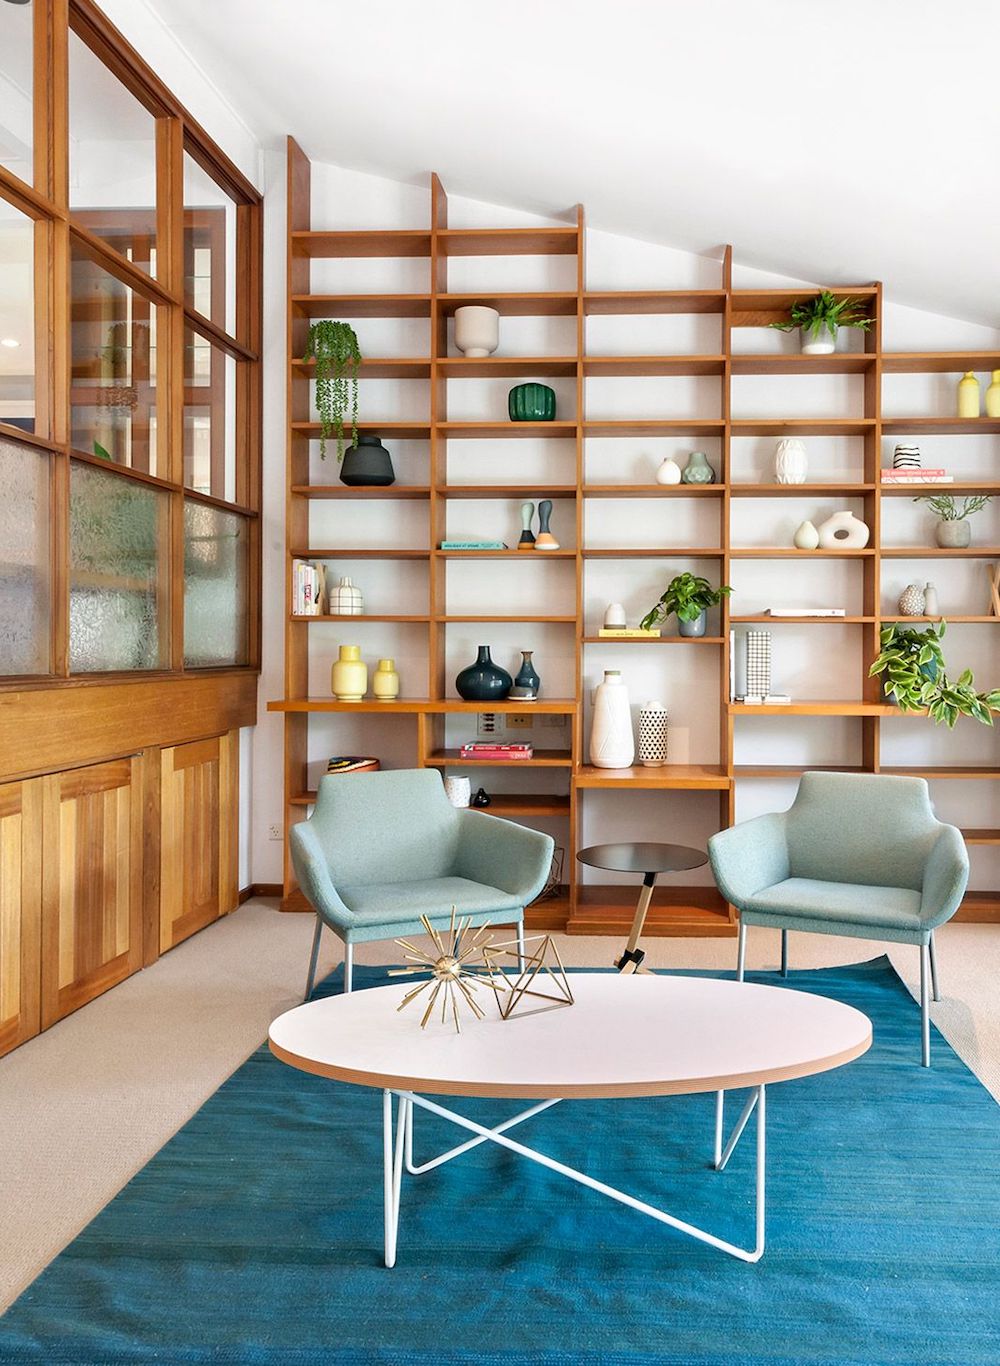 Mid-Century Modern Living Room with Built-in Wood Bookshelves via Pettit and Sevitt